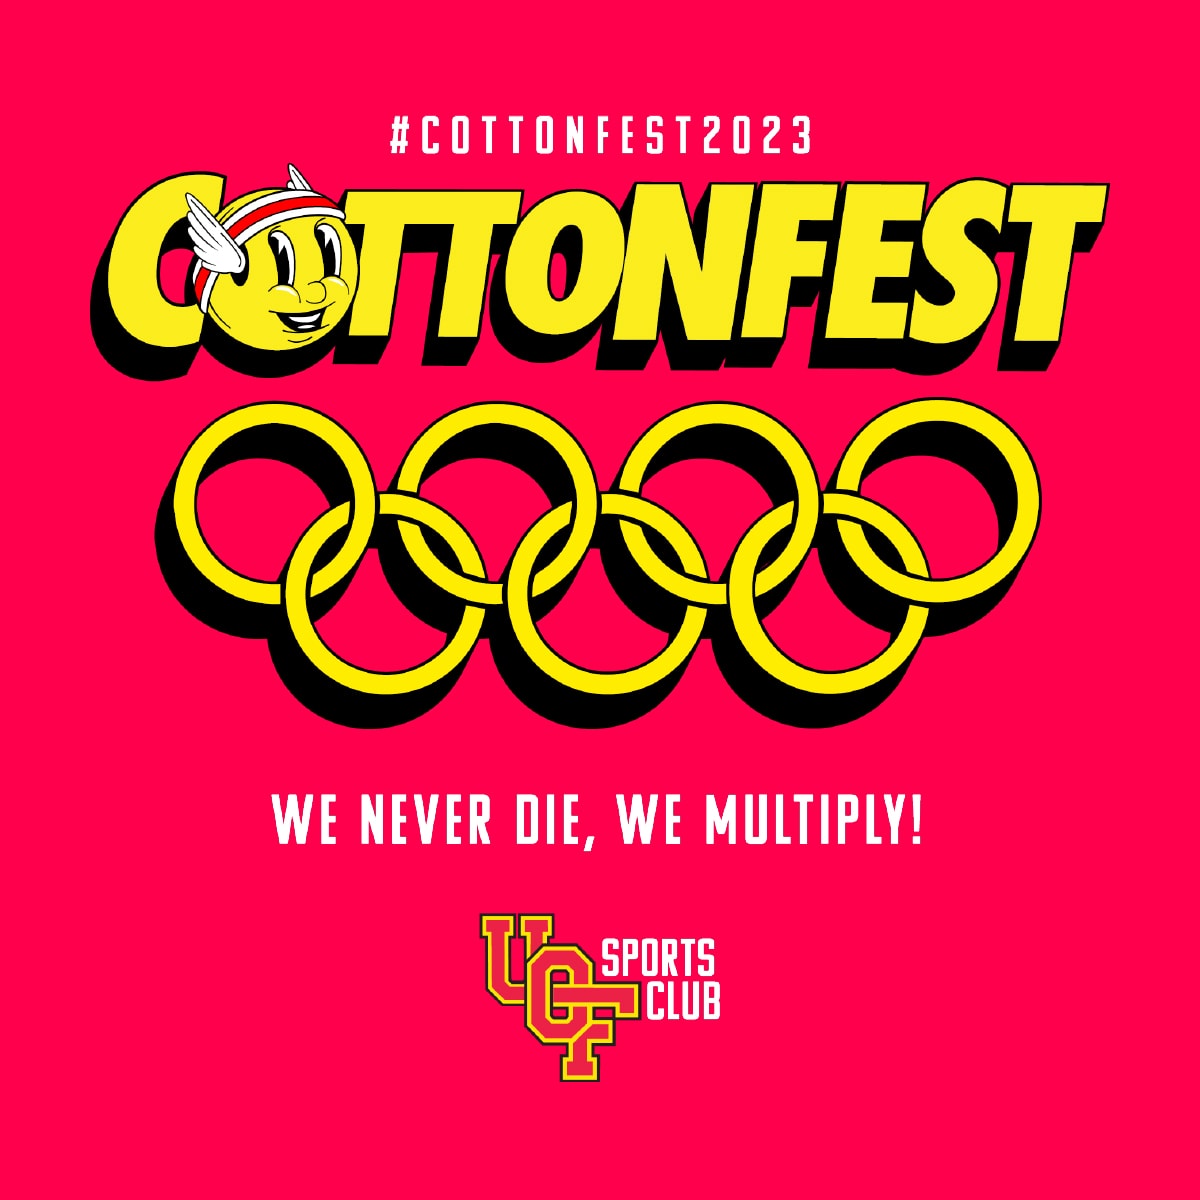 Cottonfest Logo 2023 Jpg.webp